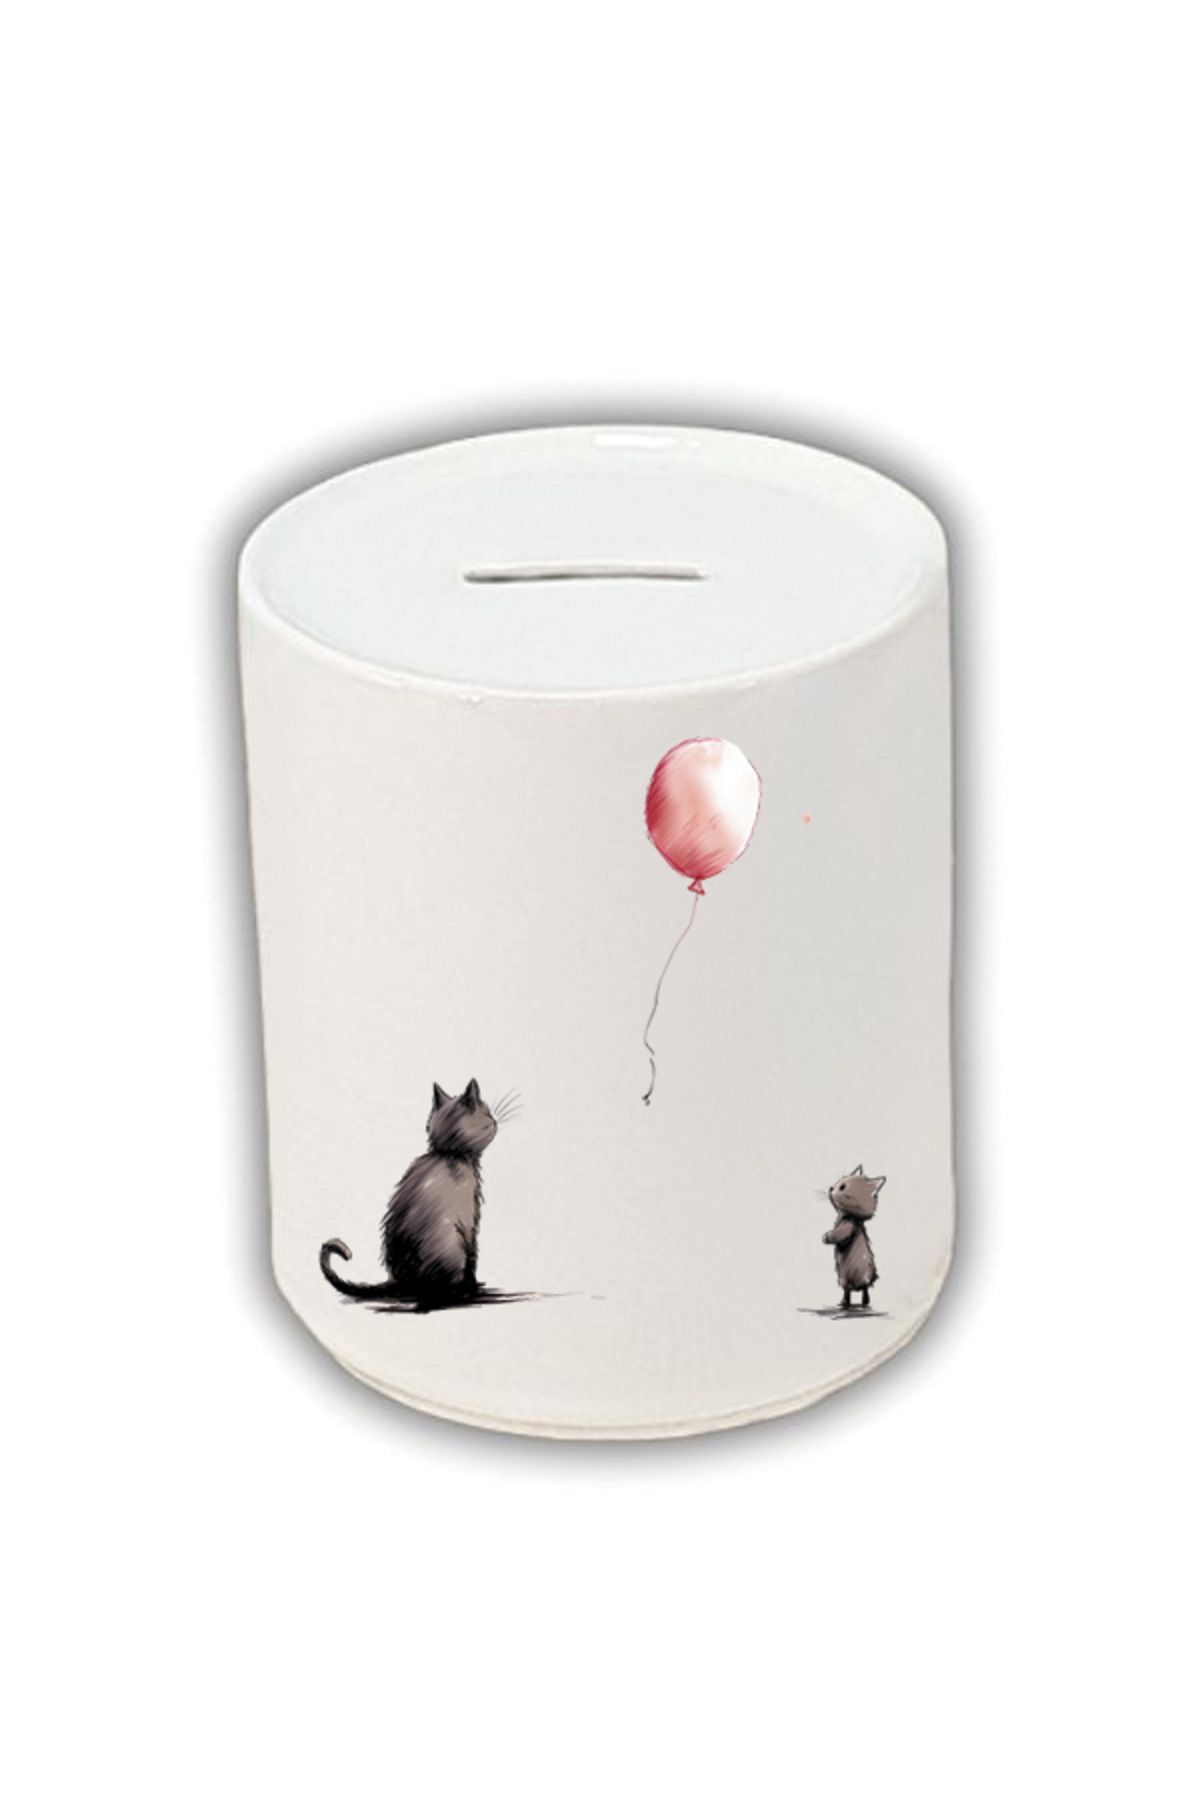 lili hediyelik Kedi ve Balon Baskılı Kumbara - Seramik Para Biriktirme Kumbarası